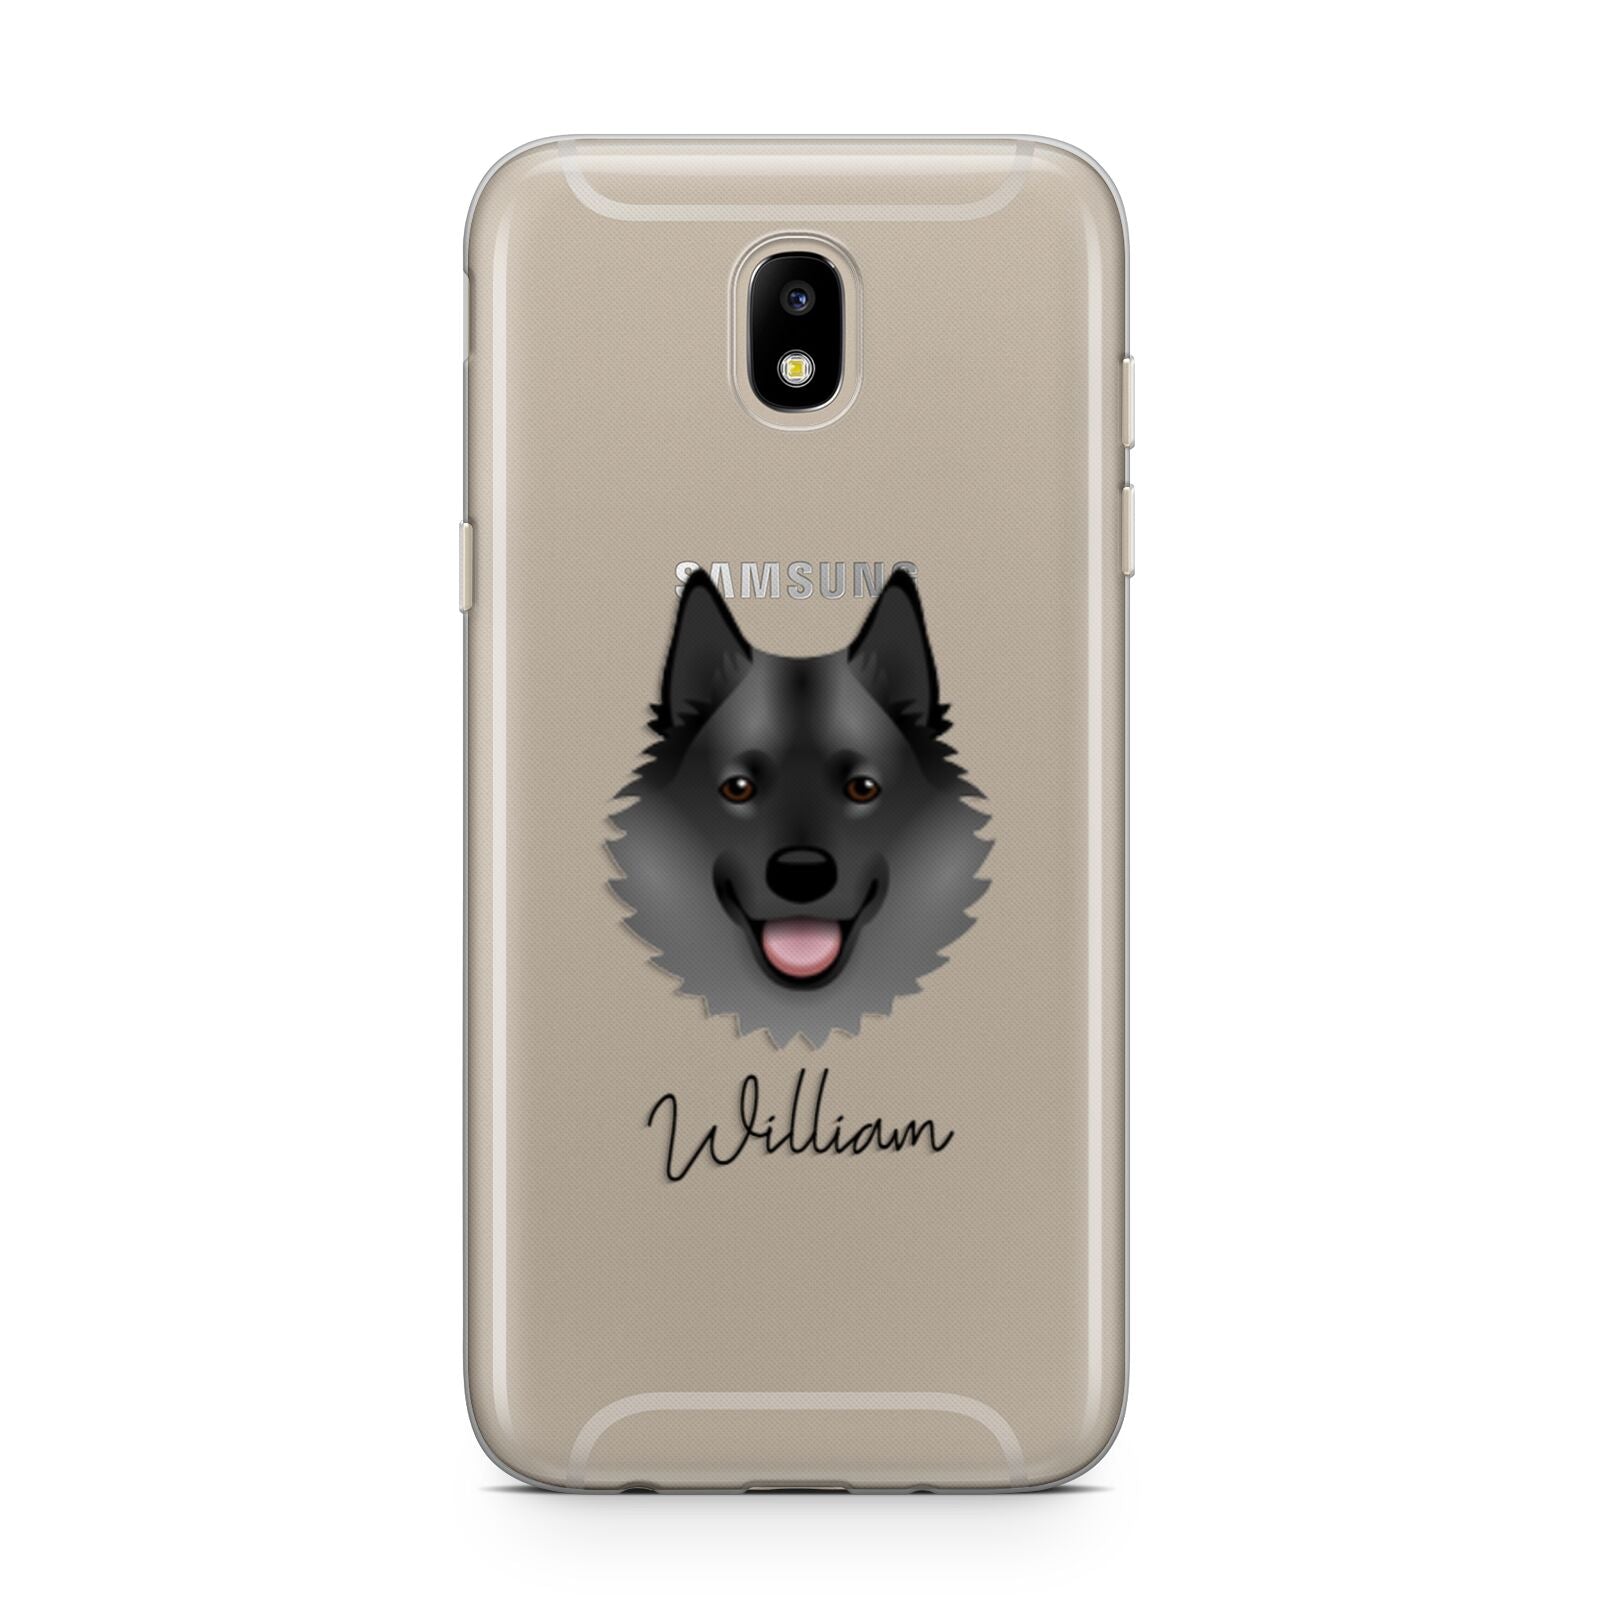 Norwegian Elkhound Personalised Samsung J5 2017 Case